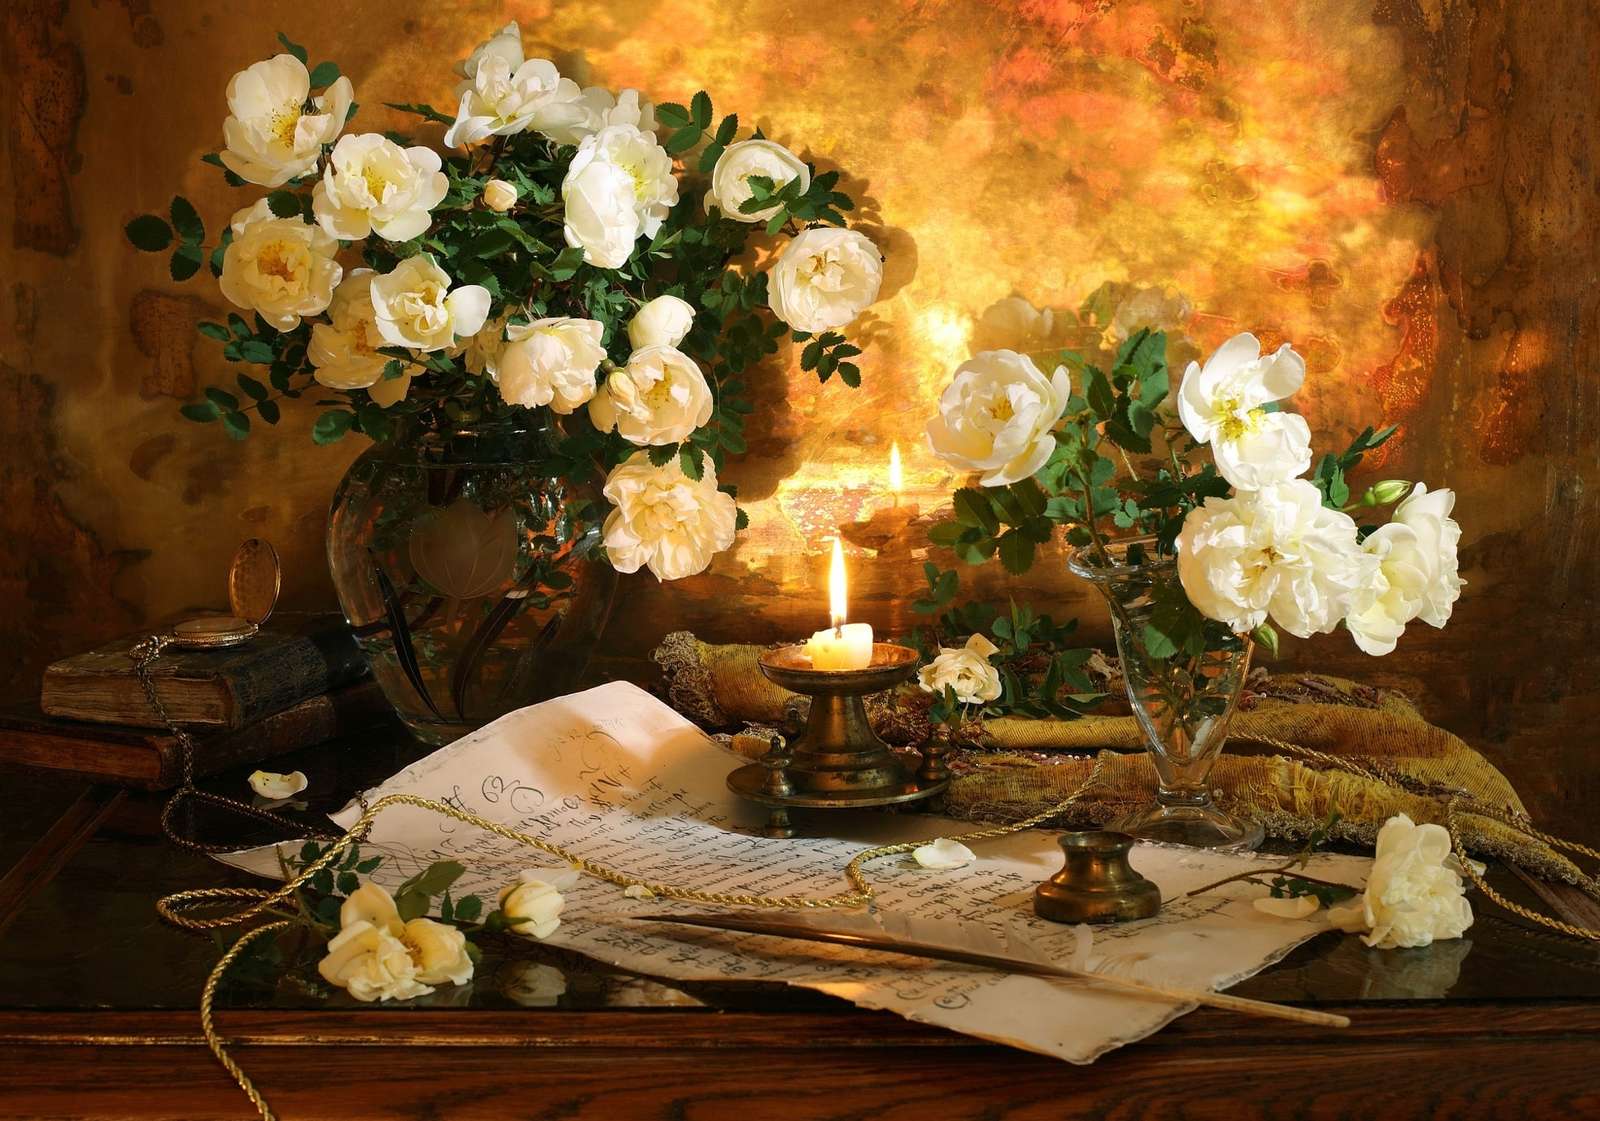 Підсвічник на рукописі поруч із вазою з квітами пазл онлайн